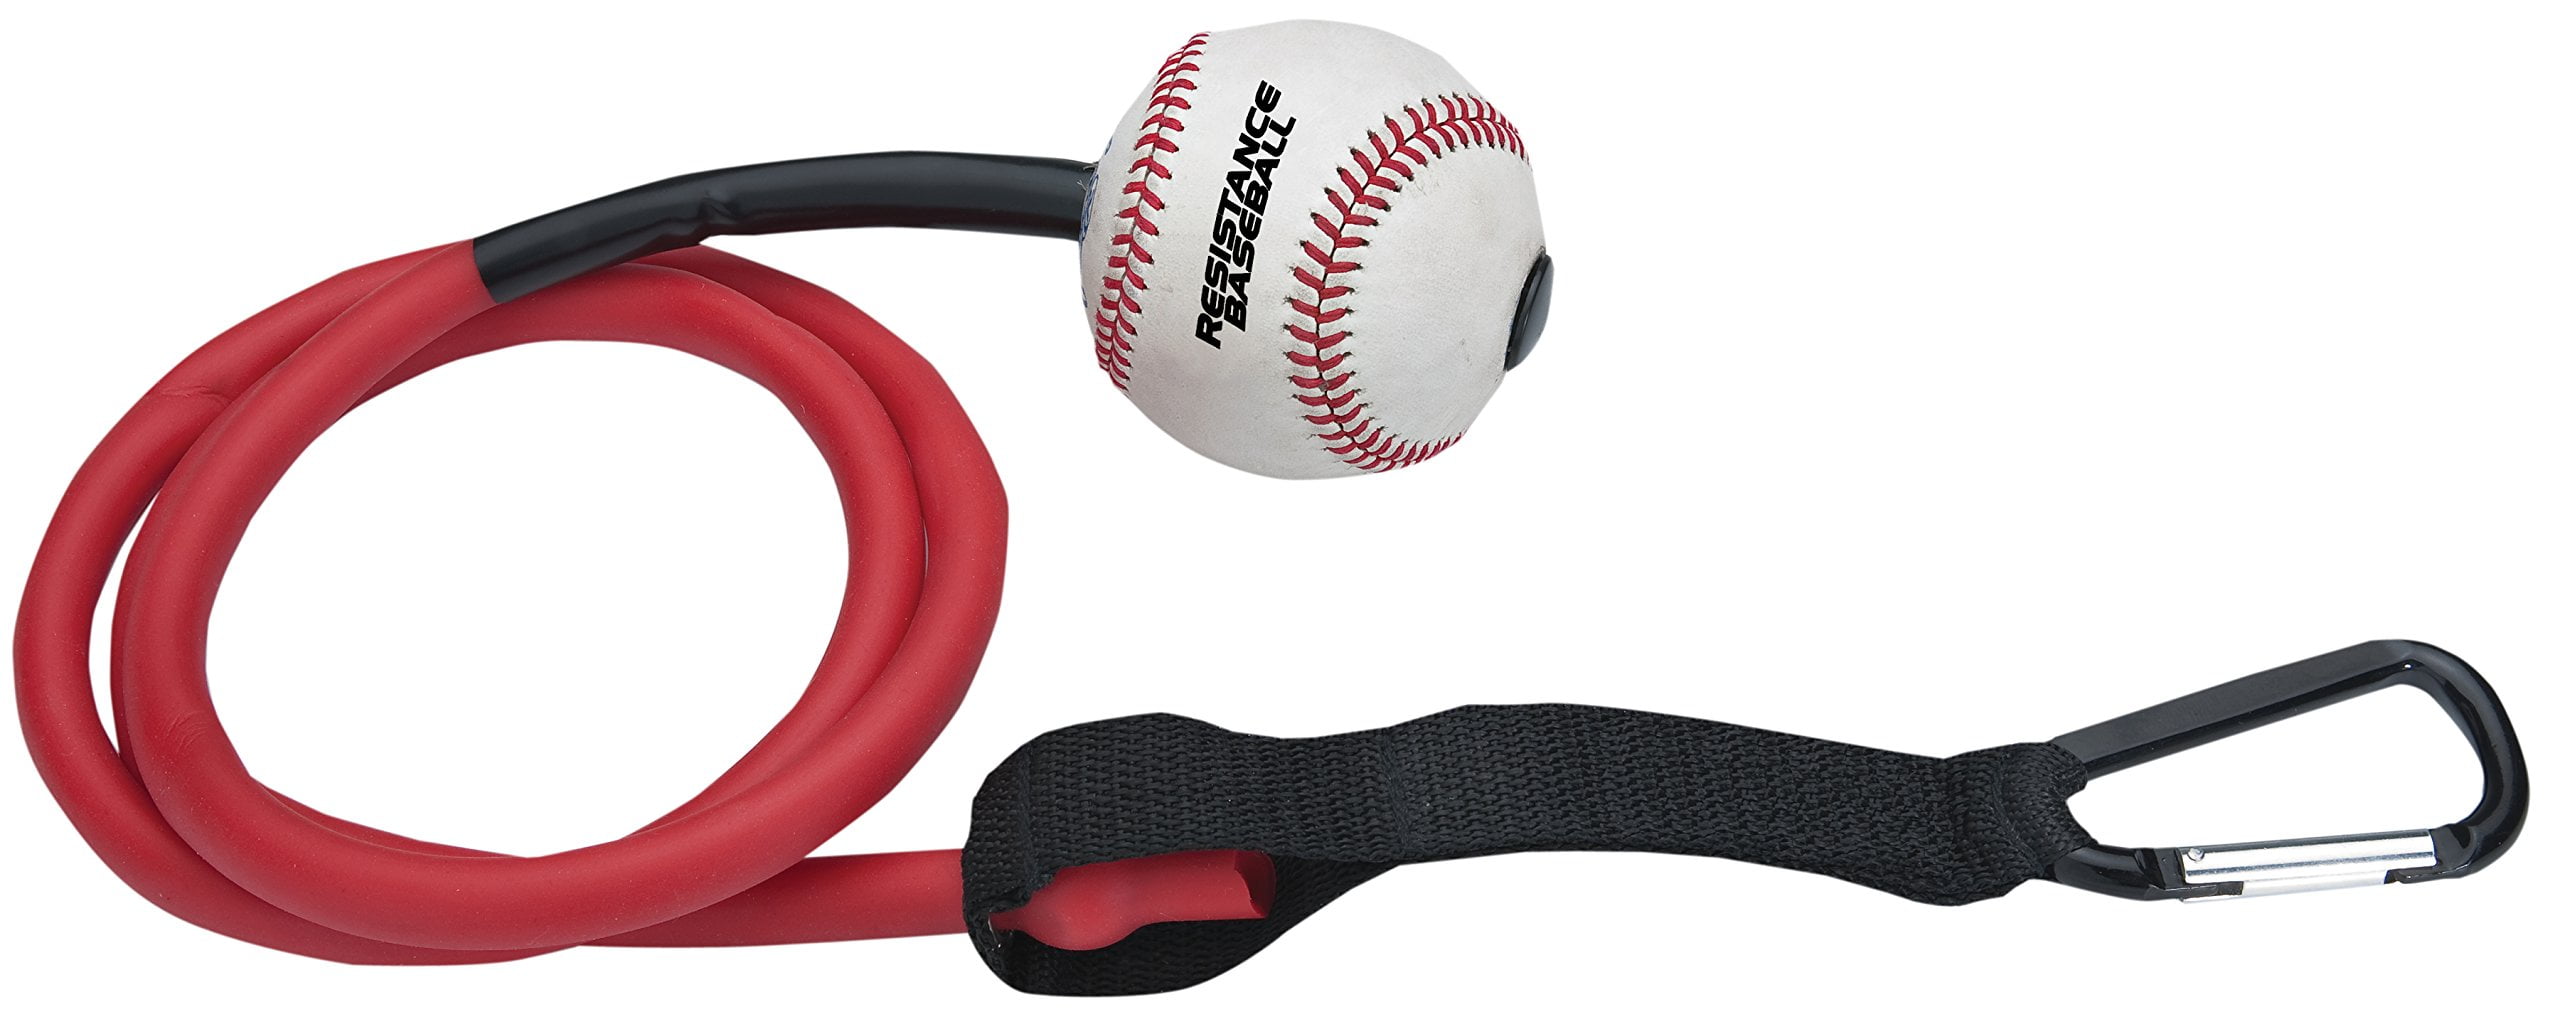 Easton Training Stick Baseball Softball Batting Trainer for sale online 